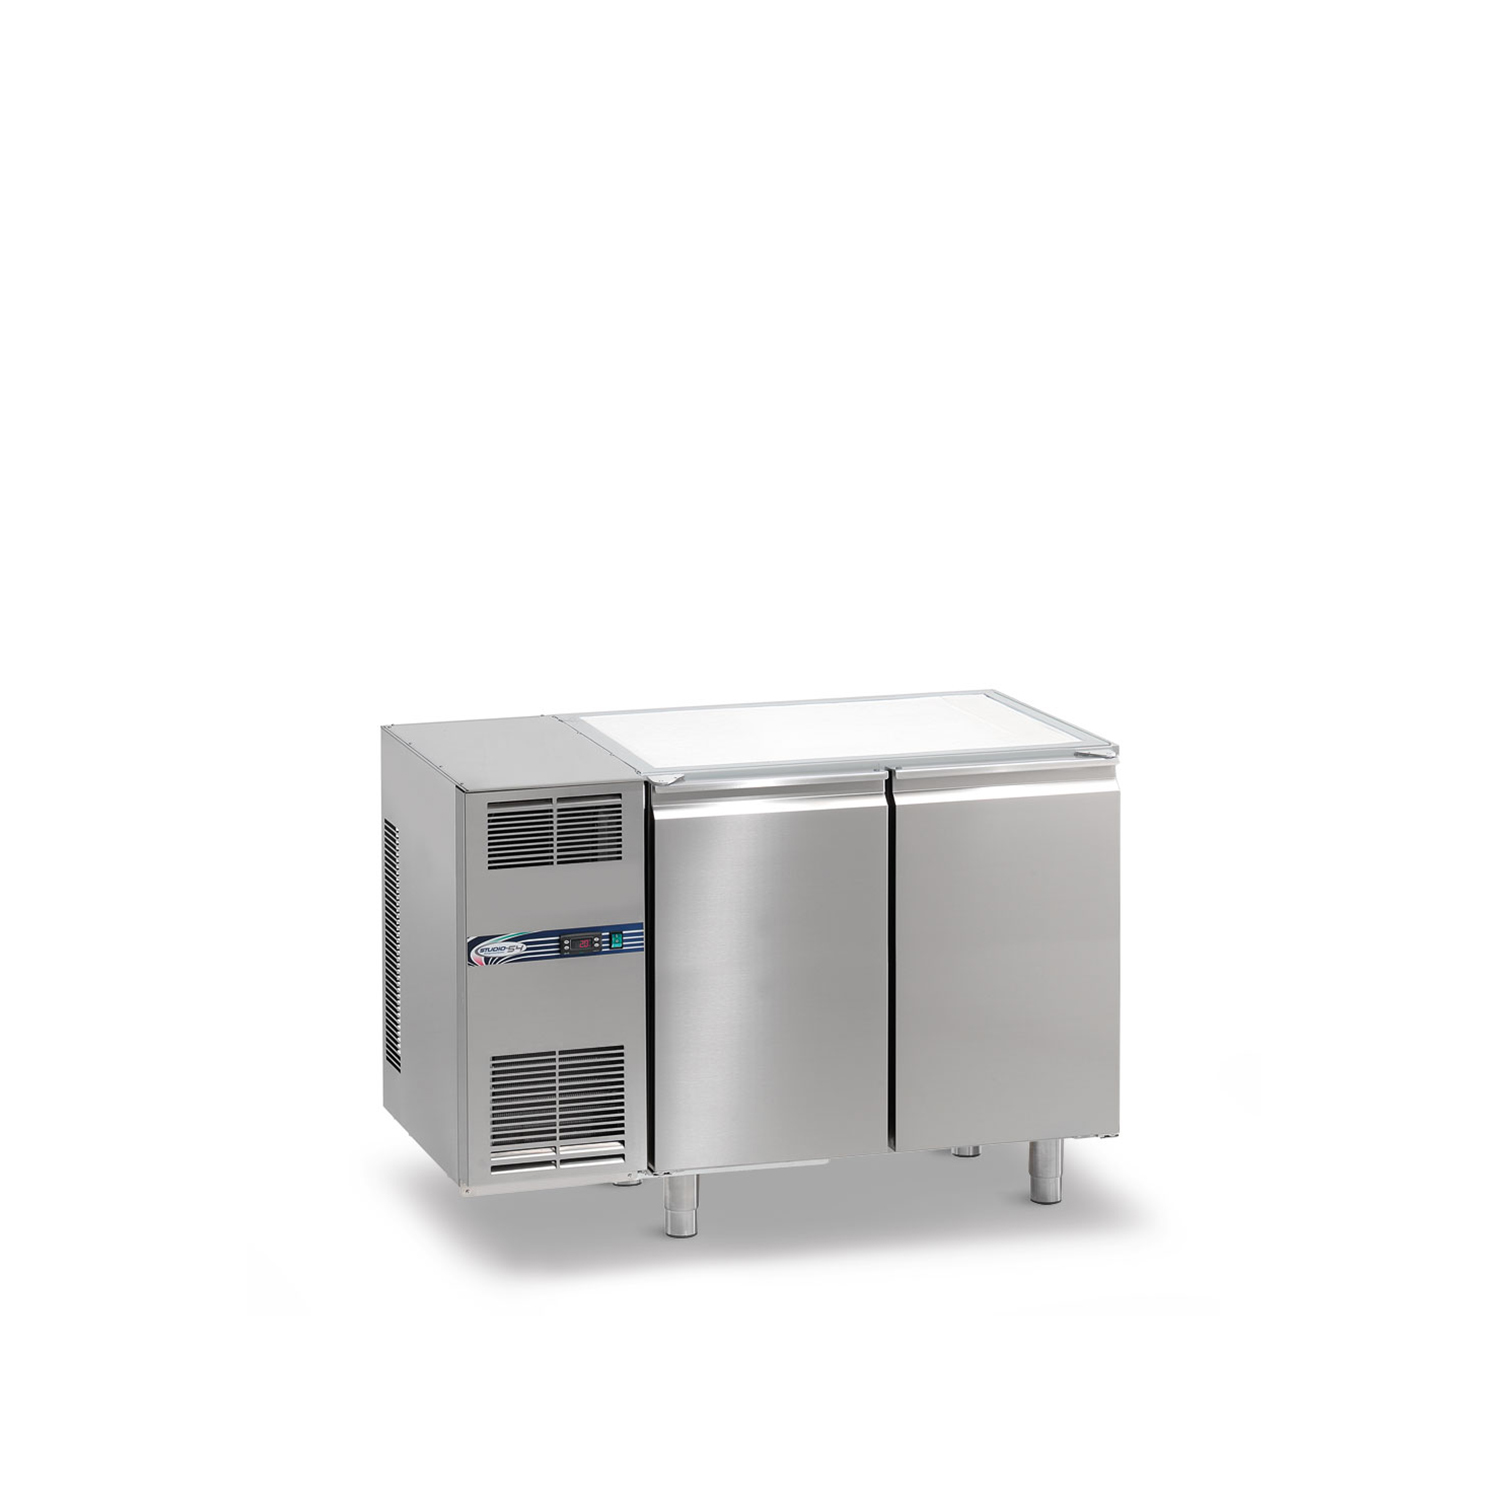 Tiefkühltisch DAIQUIRI Top Line H710 GN 1/1, B 1280  x T 700 x H 860 mm, 2 Kühlfächer, ohne Arbeitsplatte